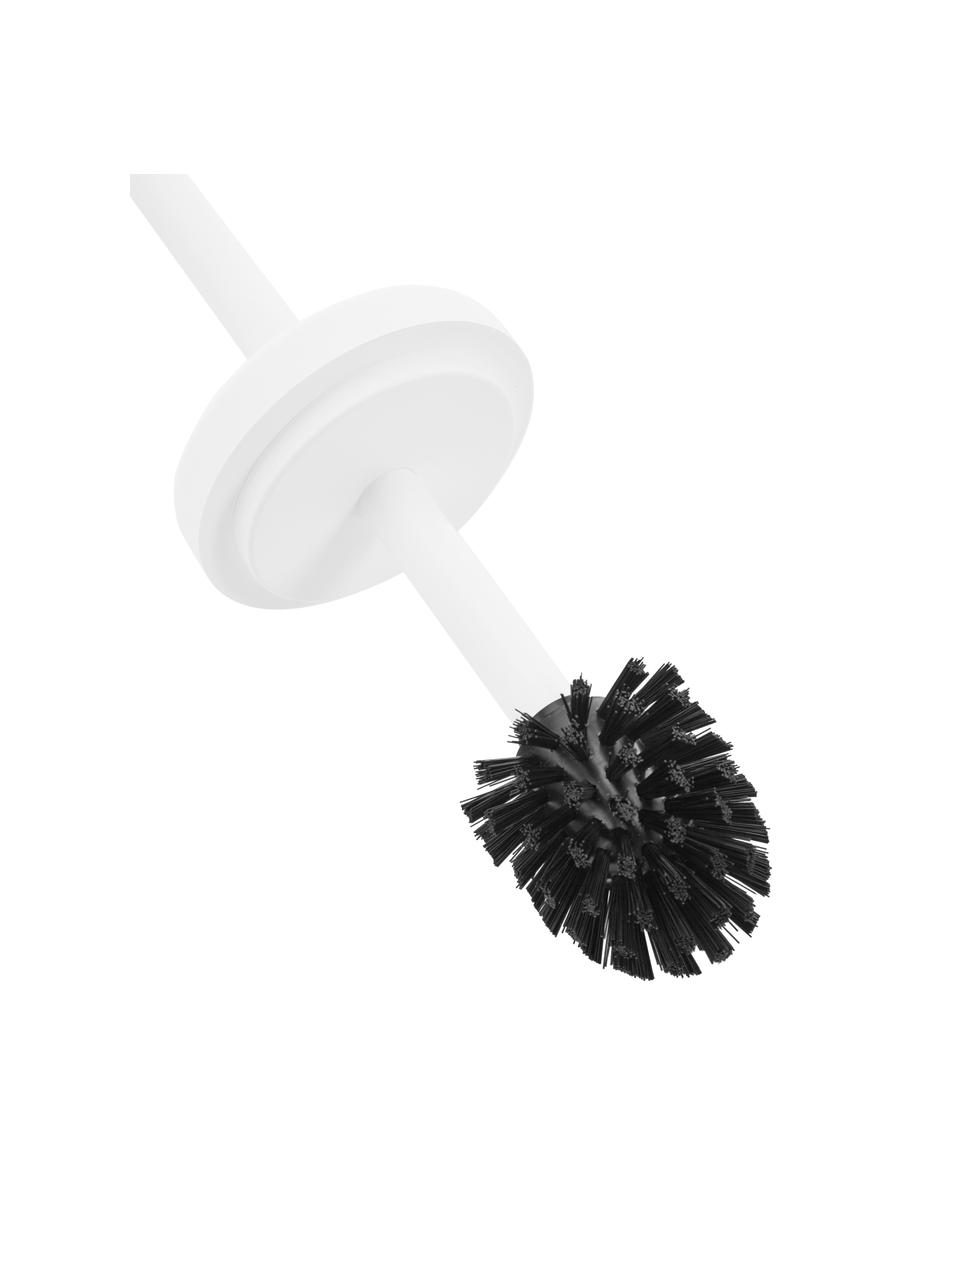 Toilettenbürste Ume mit Behälter, Behälter: Steingut überzogen mit So, Griff: Kunststoff, Weiß, Ø 10 x H 39 cm